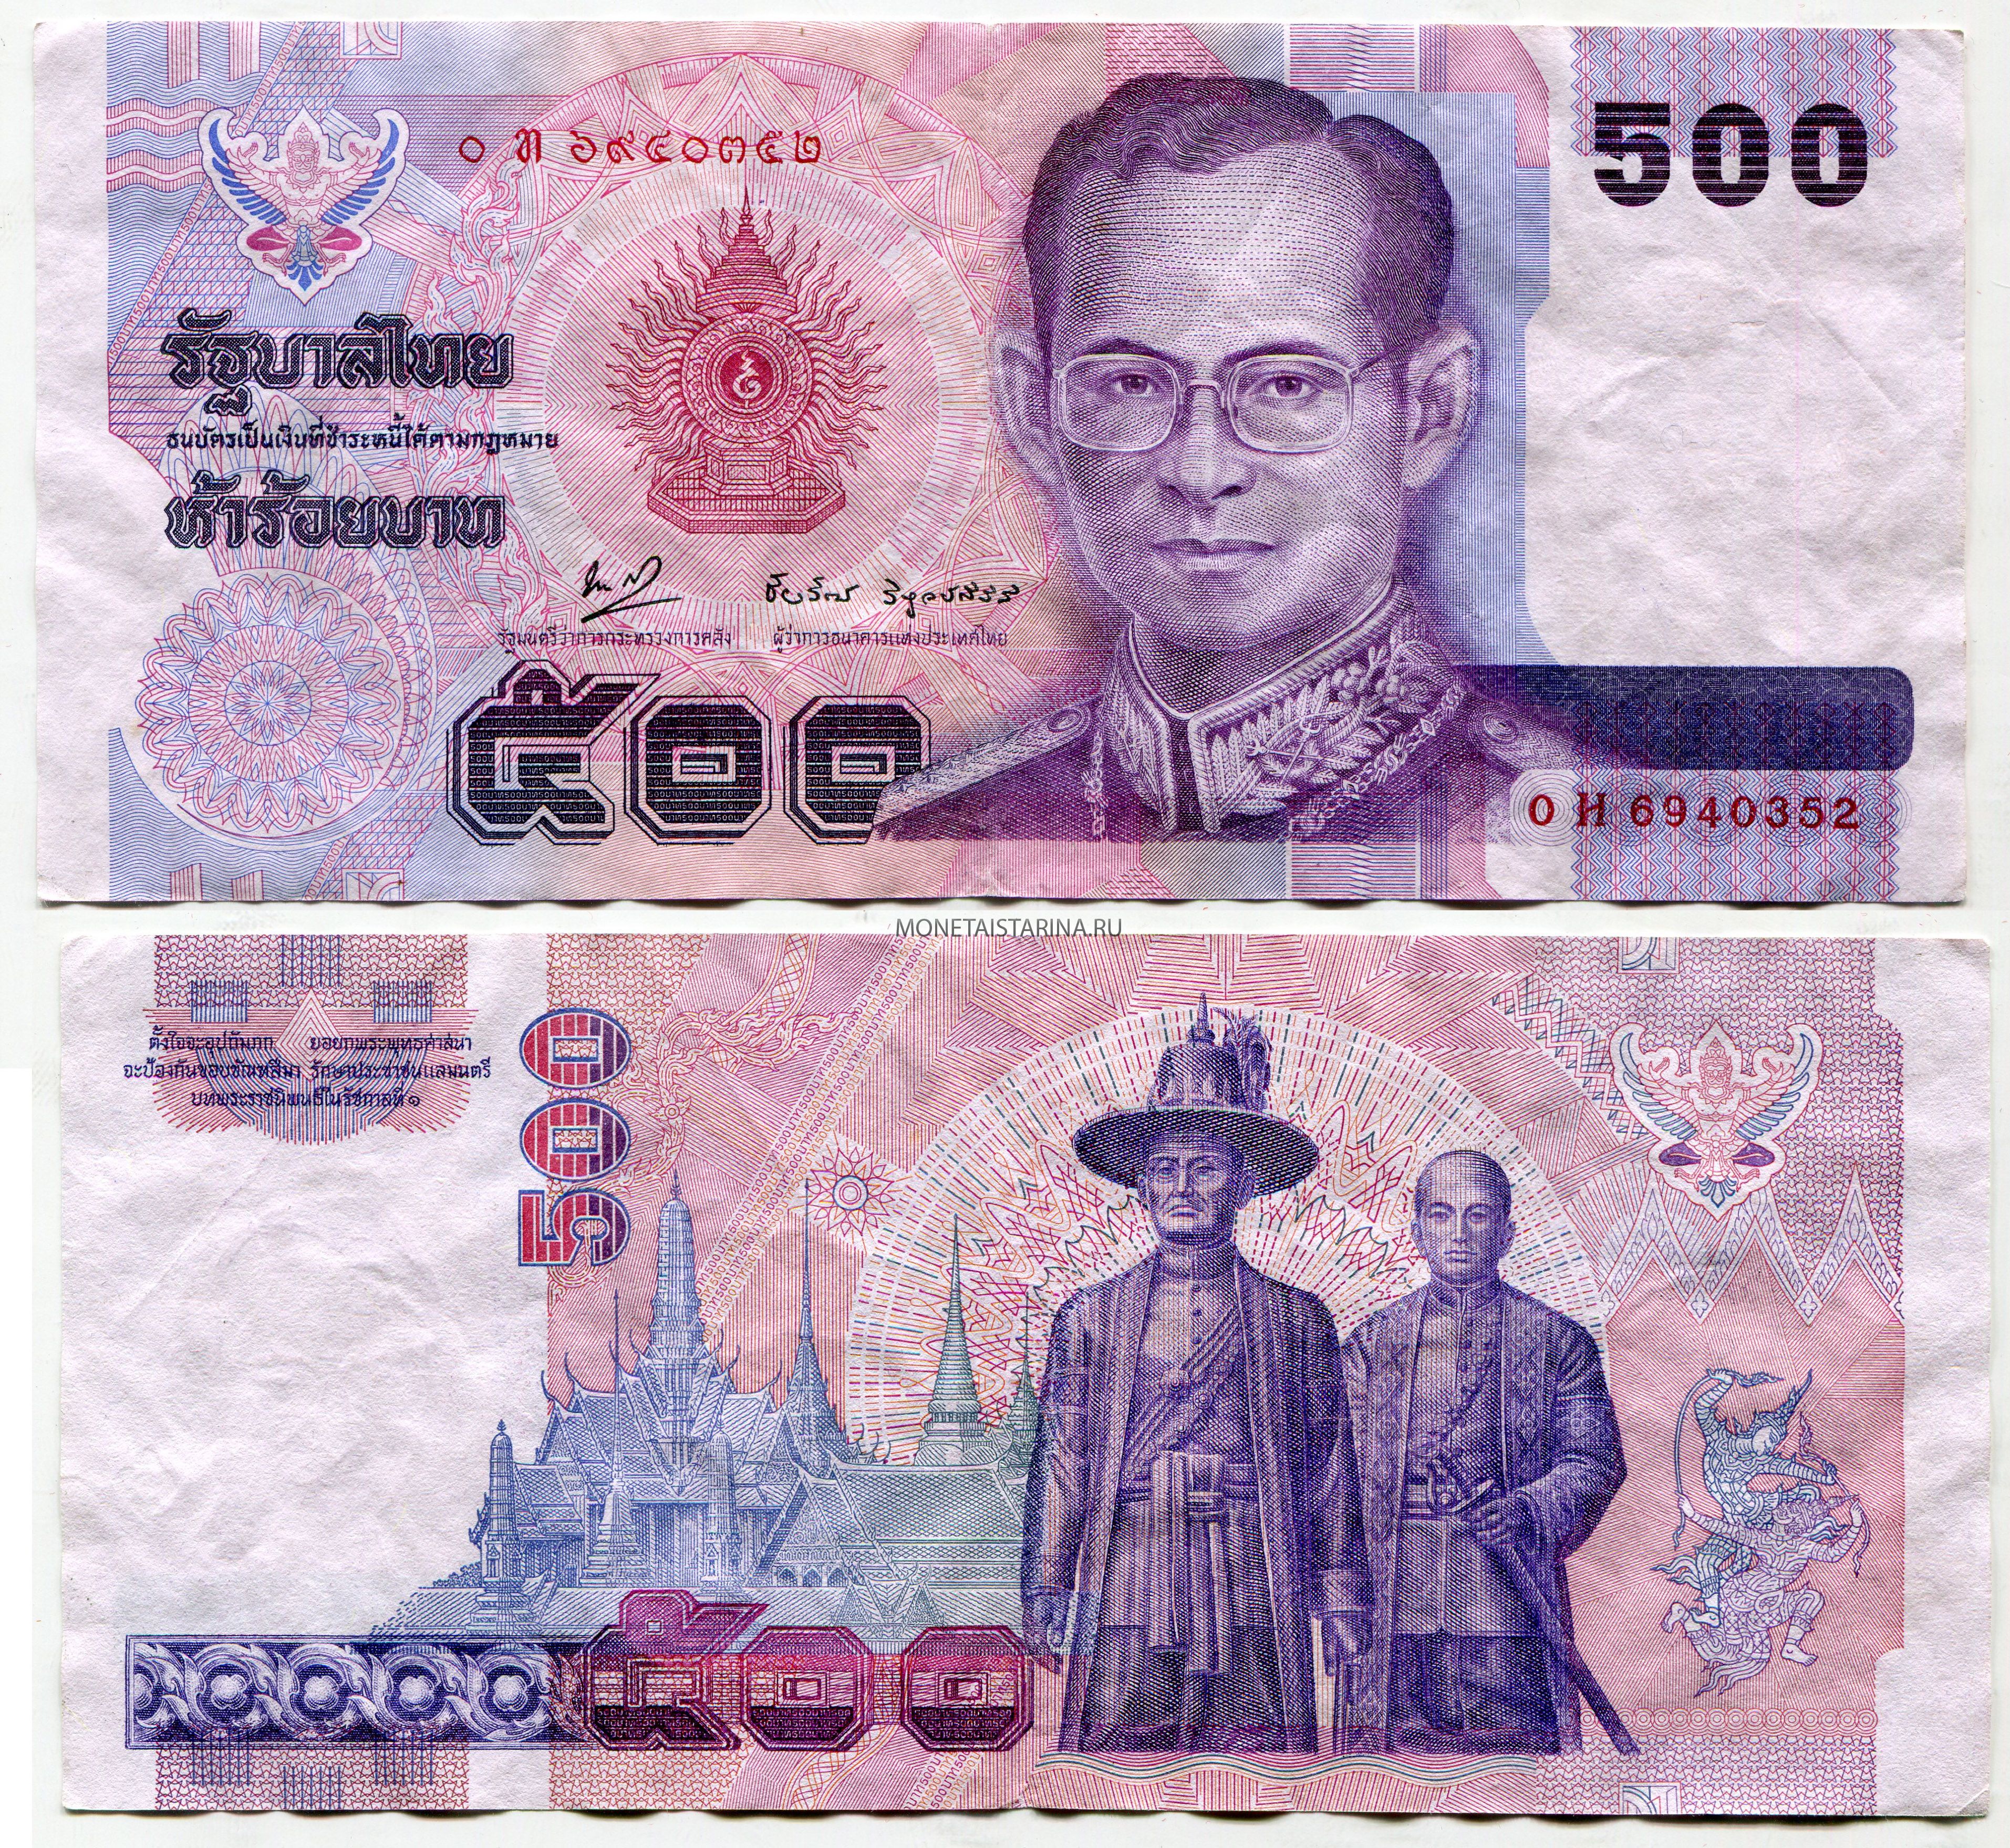 2500 батов в рублях. 500 Бат Тайланд купюра. Банкнота 100 бат Тайланд. Банкноты Таиланда 500 бат. Тайланд банкнота 500 бат.